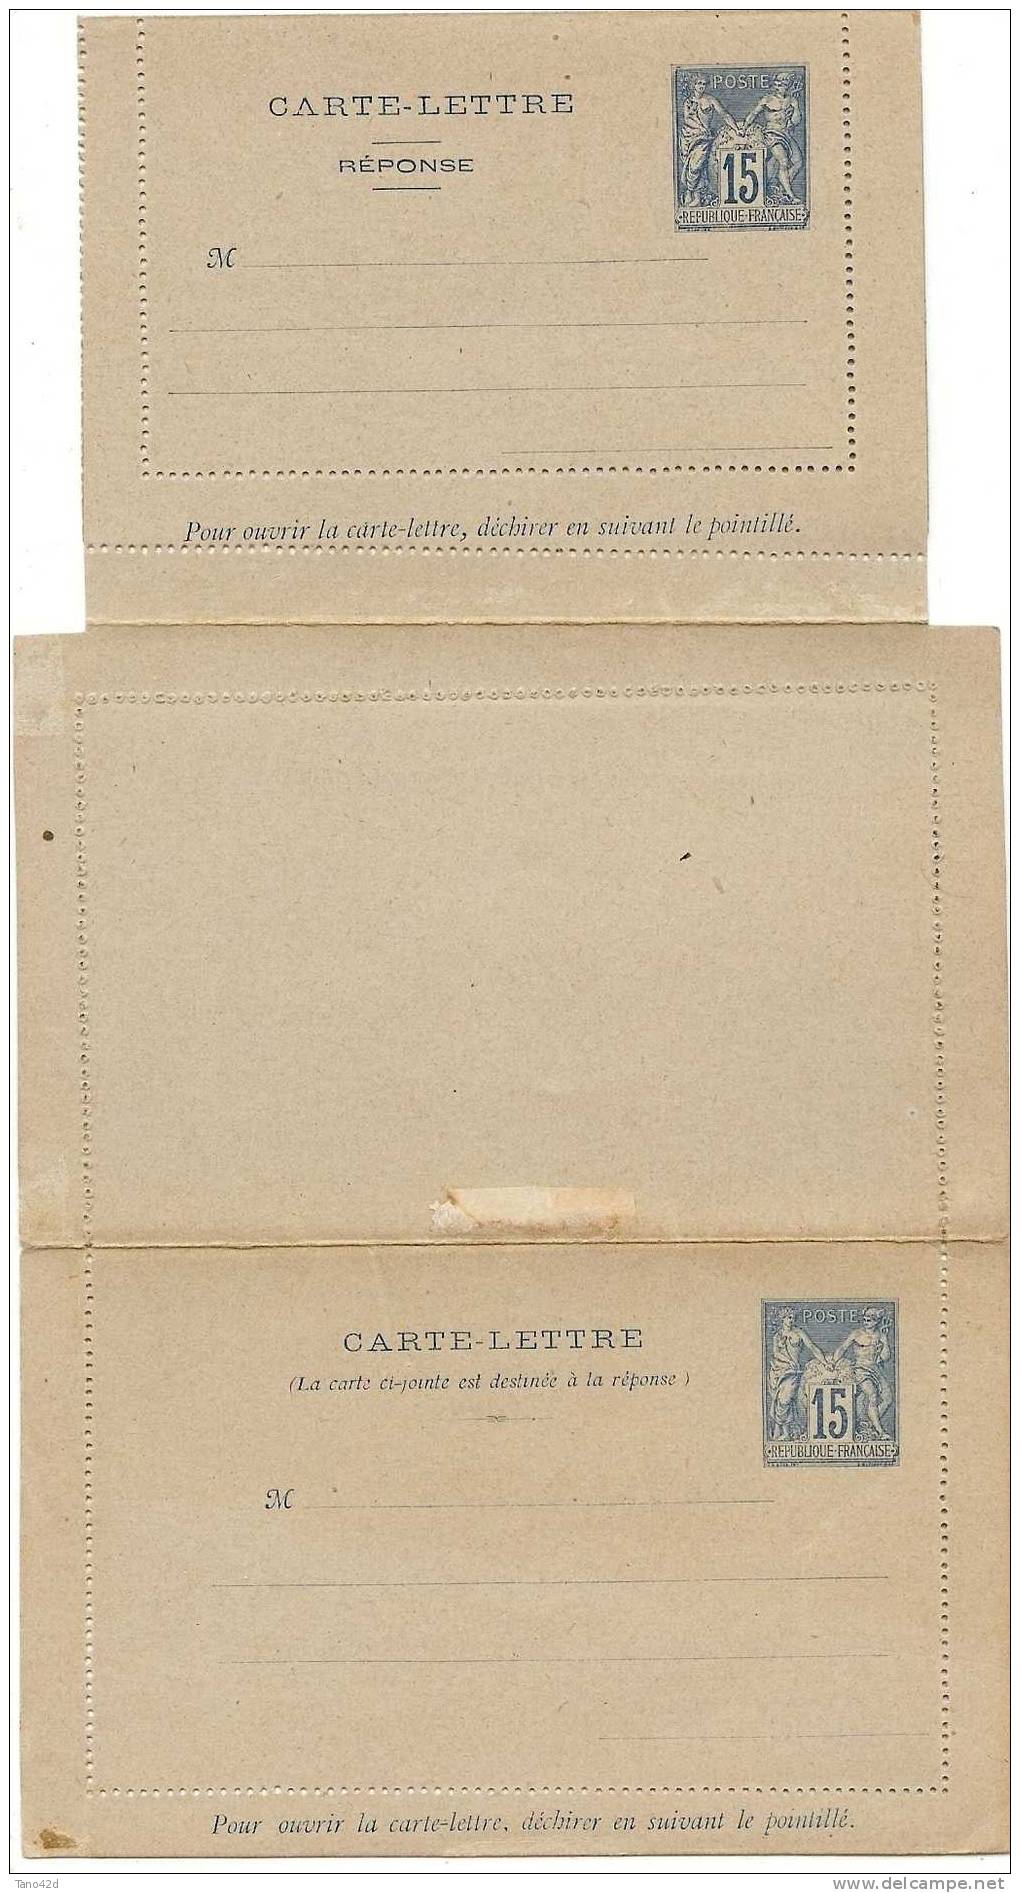 REF LGM - FRANCE CARTE LETTRE AVEC REPONSE PAYEE TYPE SAGE 15c - Cartes-lettres